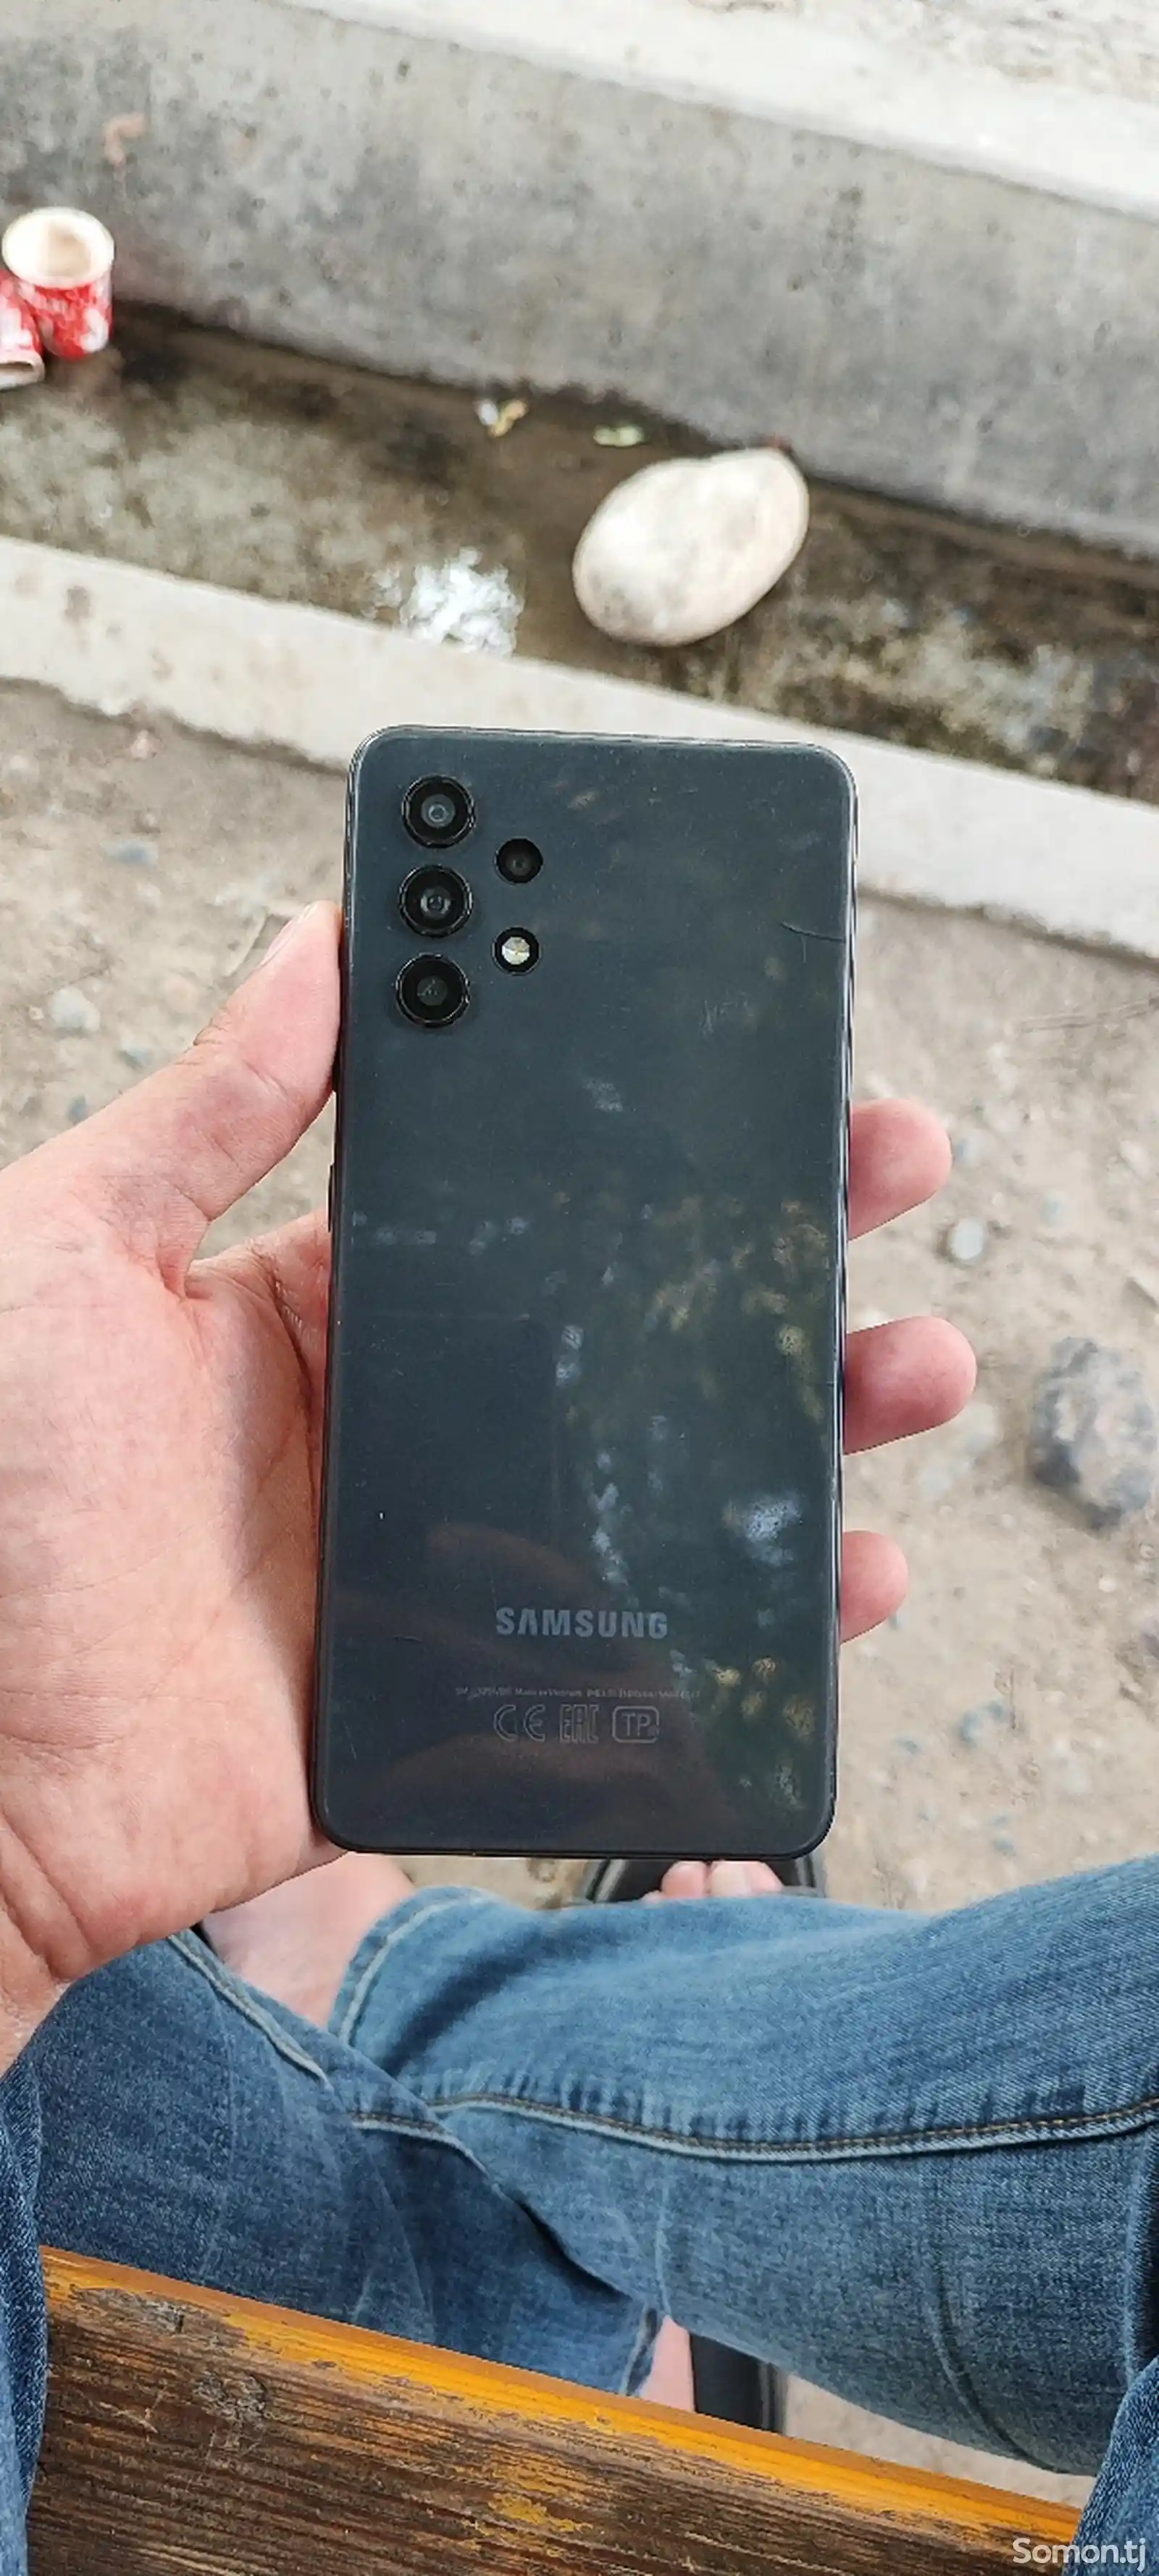 Samsung Galaxy A32-2